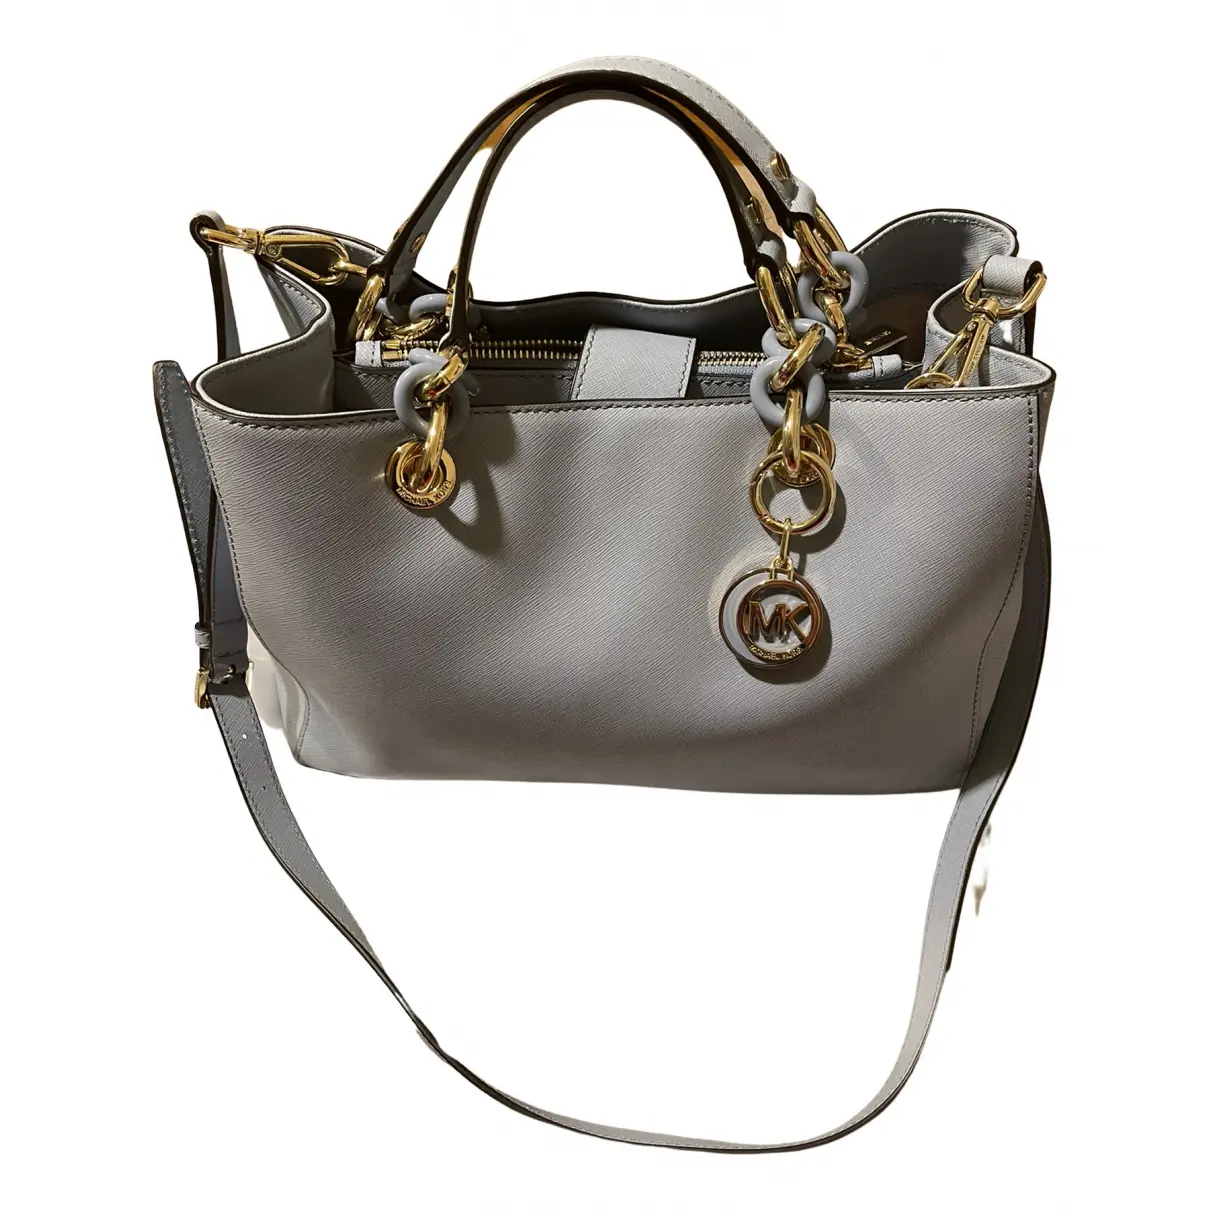 Cynthia leather handbag Michael Kors